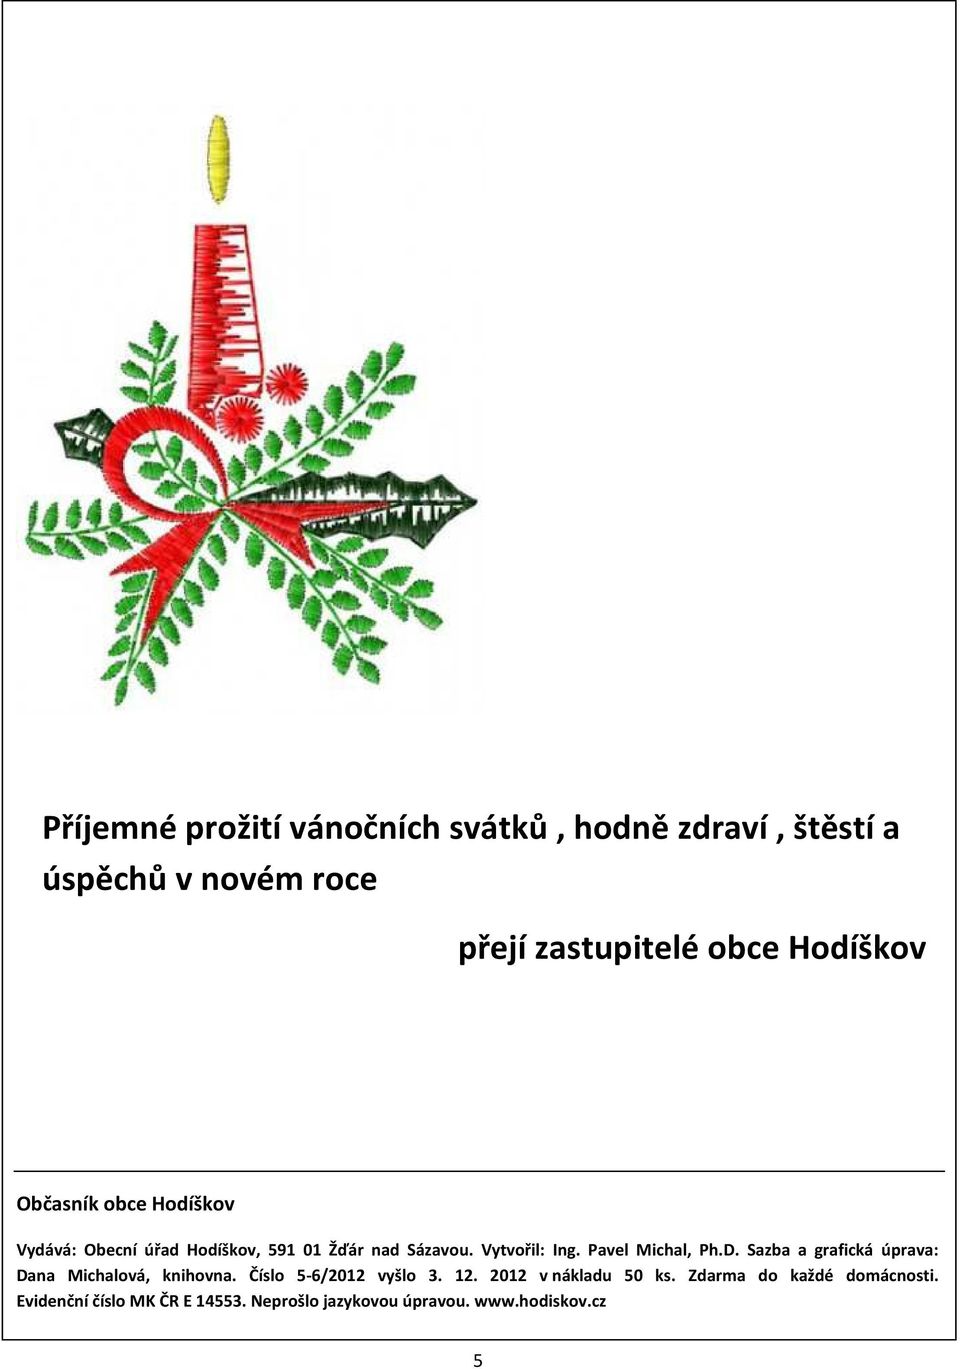 Pavel Michal, Ph.D. Sazba a grafická úprava: Dana Michalová, knihovna. Číslo 5-6/2012 vyšlo 3. 12.